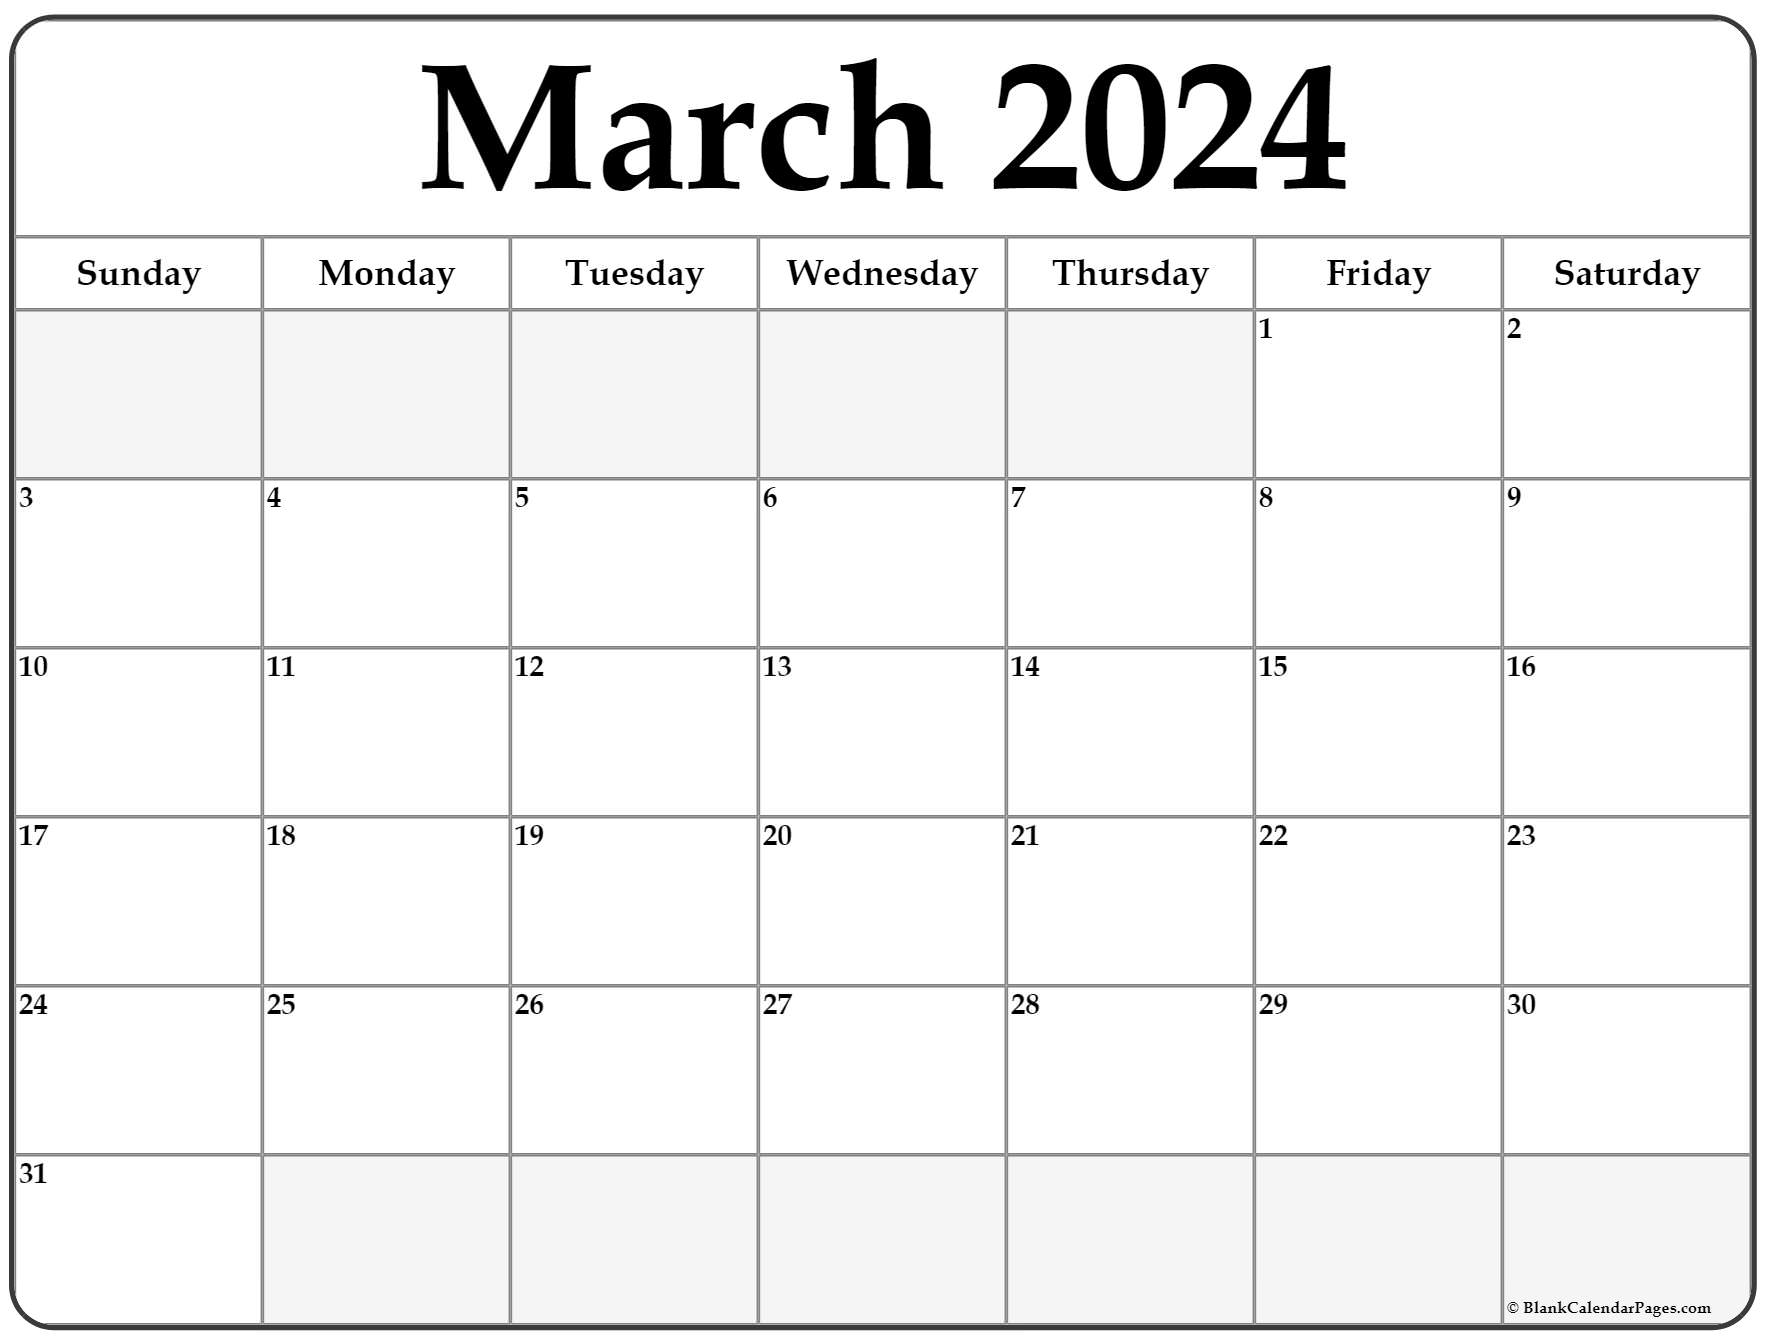 March 2022 Calendar Blank March 2022 Calendar | Free Printable Calendar Templates